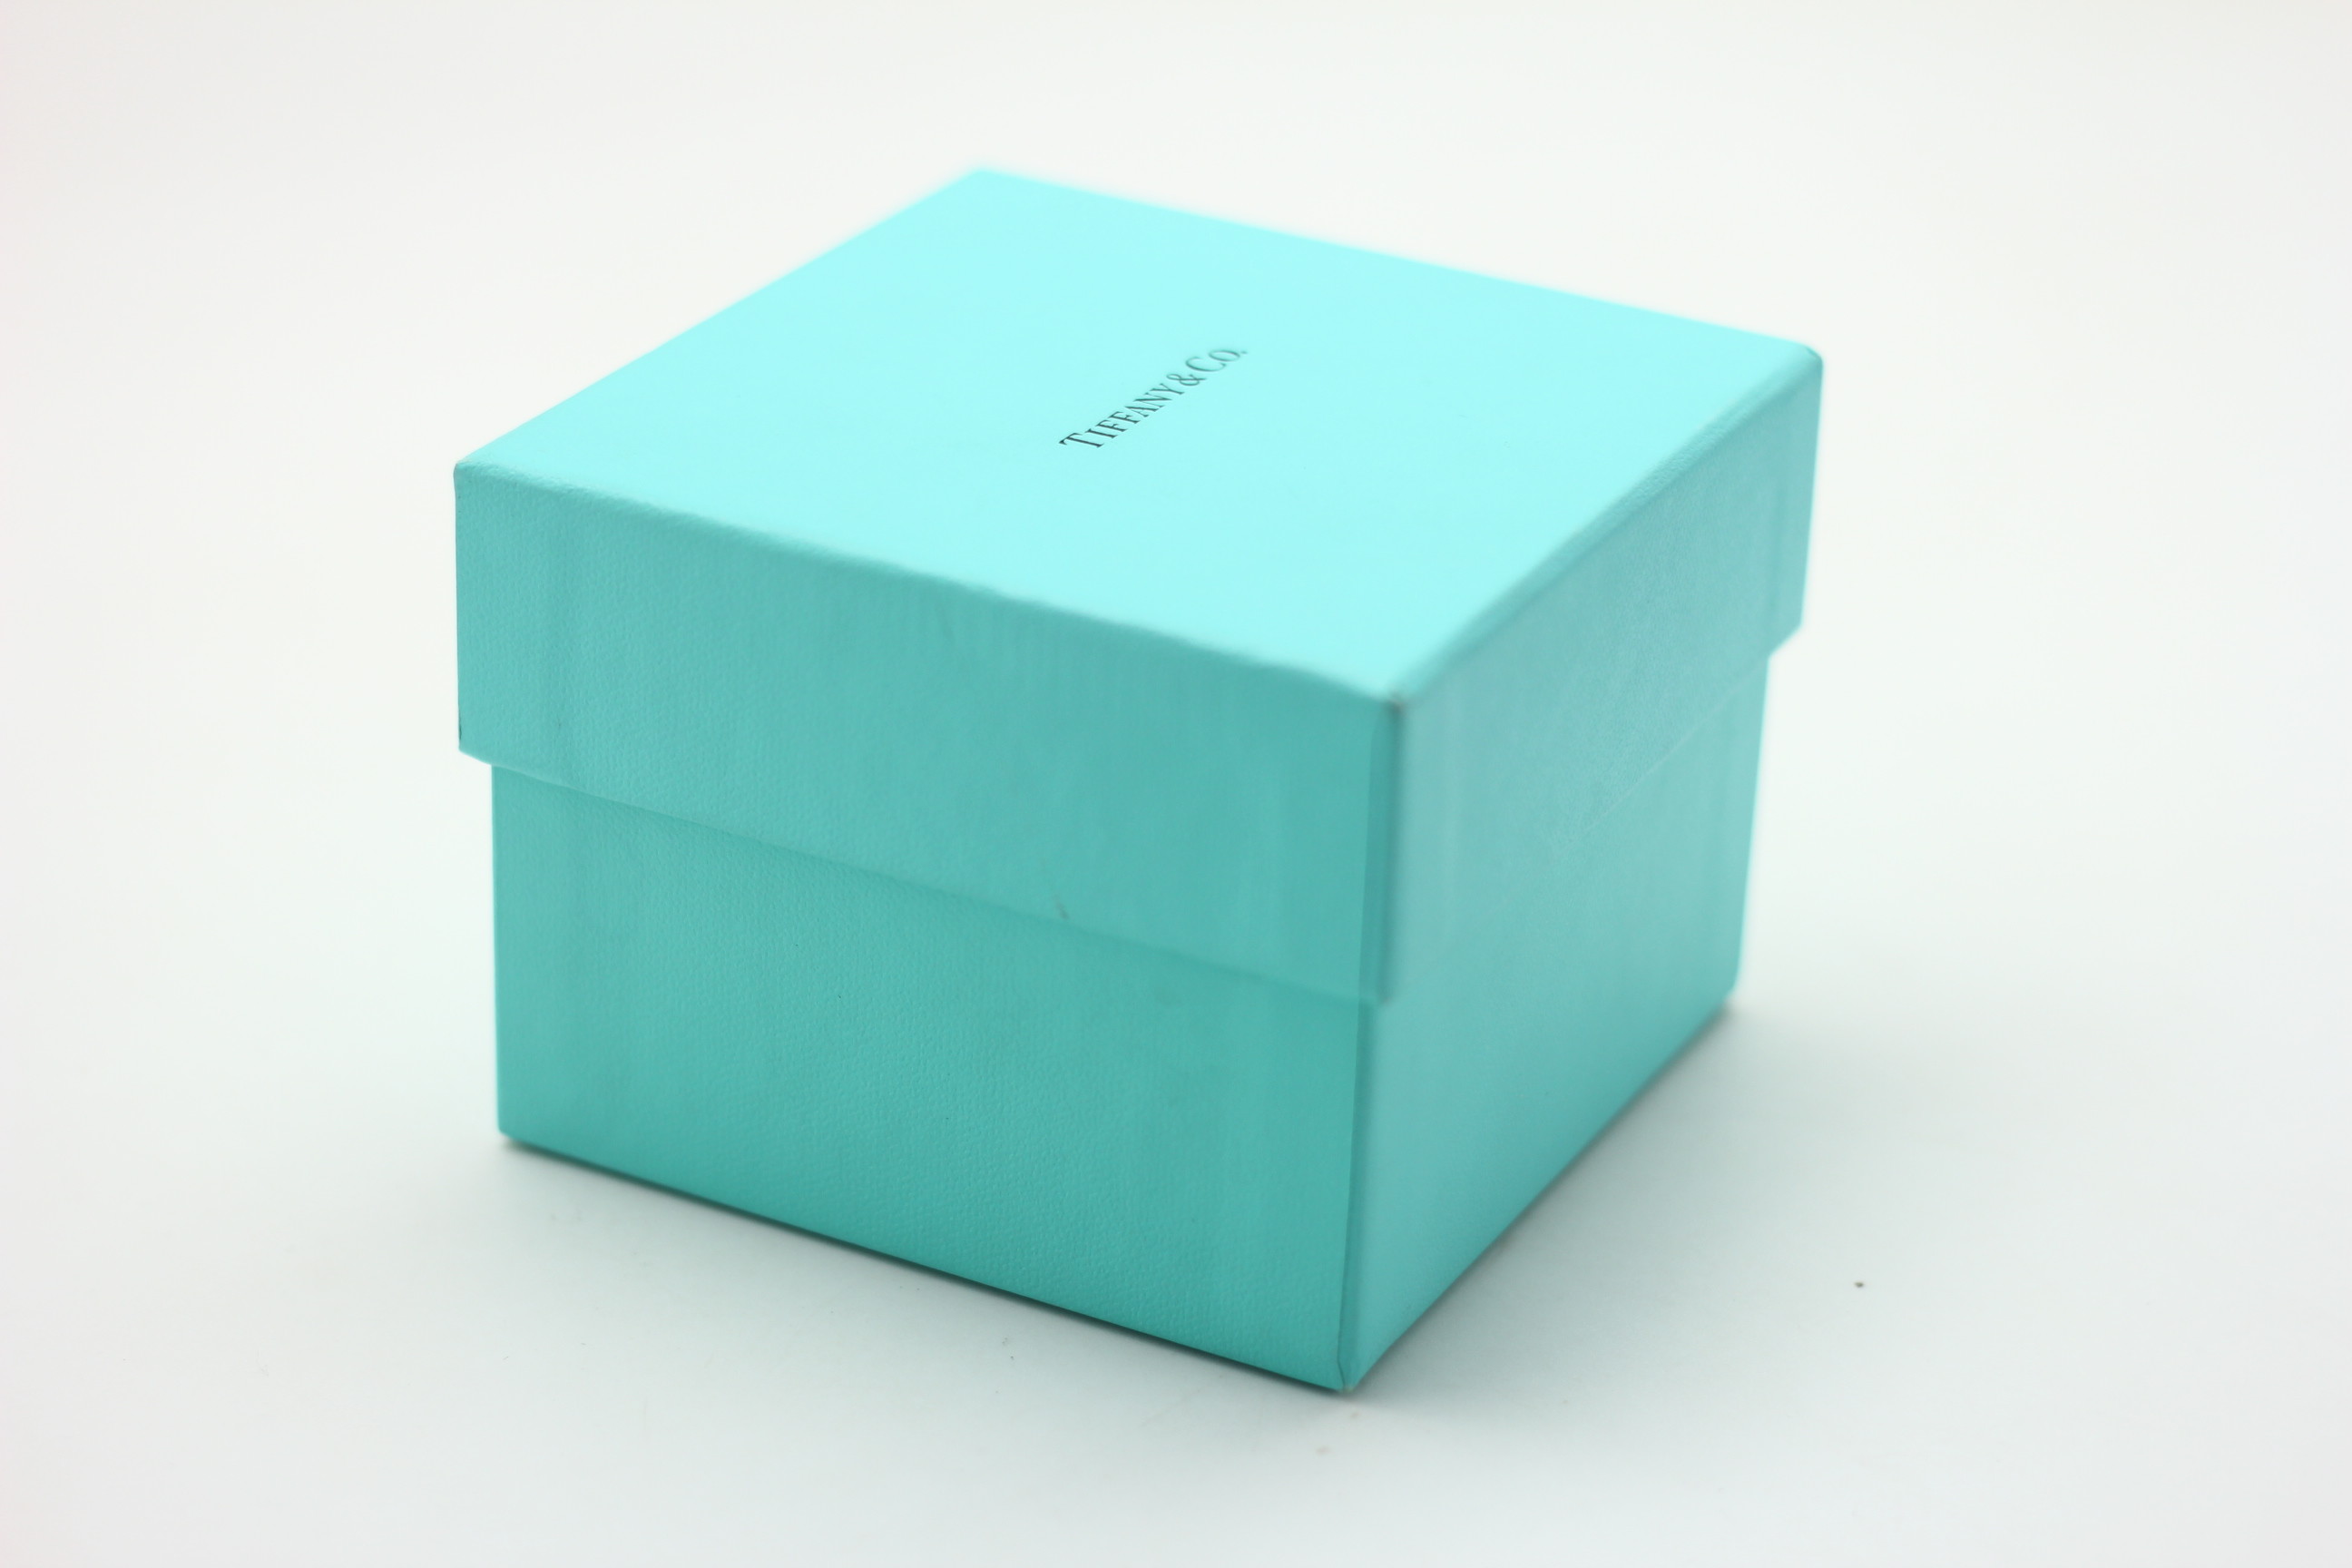 последний случай компании о Коробка ювелирных изделий упаковывая - 2 части твердой коробки